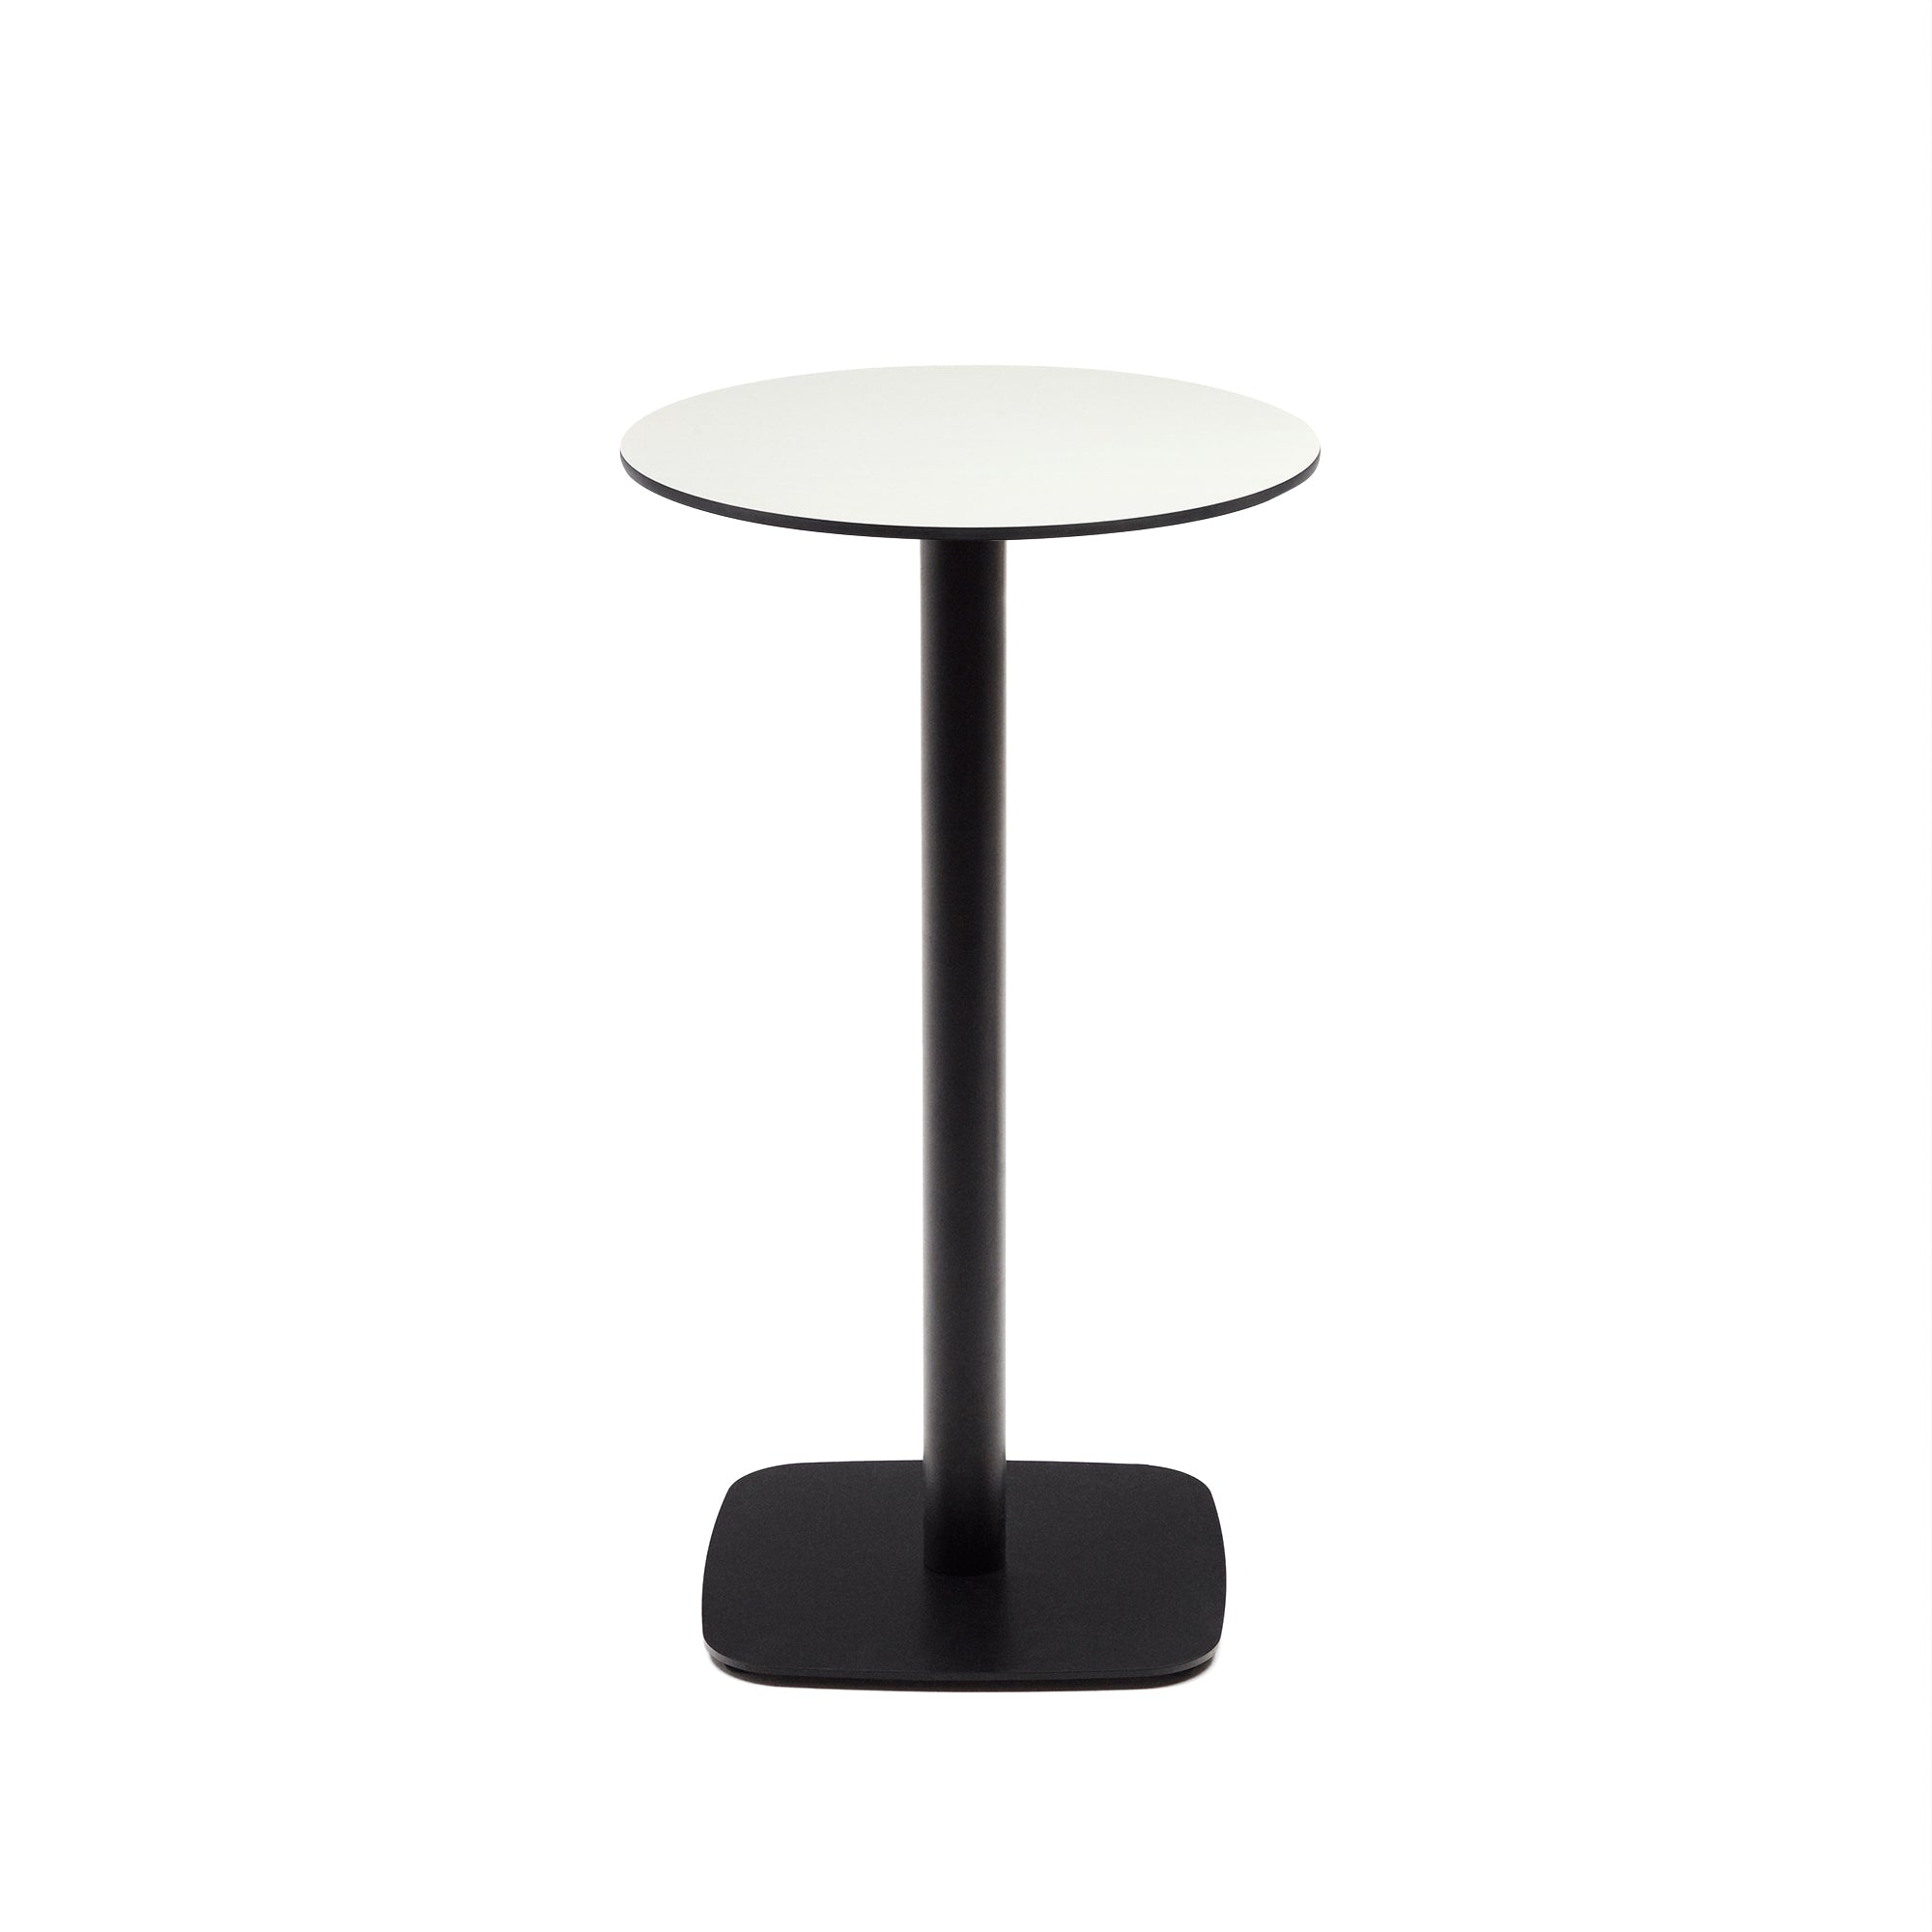 Dina magas kerek kültéri asztal fehér színben, fekete festett fémlábbal, Ø60x96 cm, Ø60x96 cm